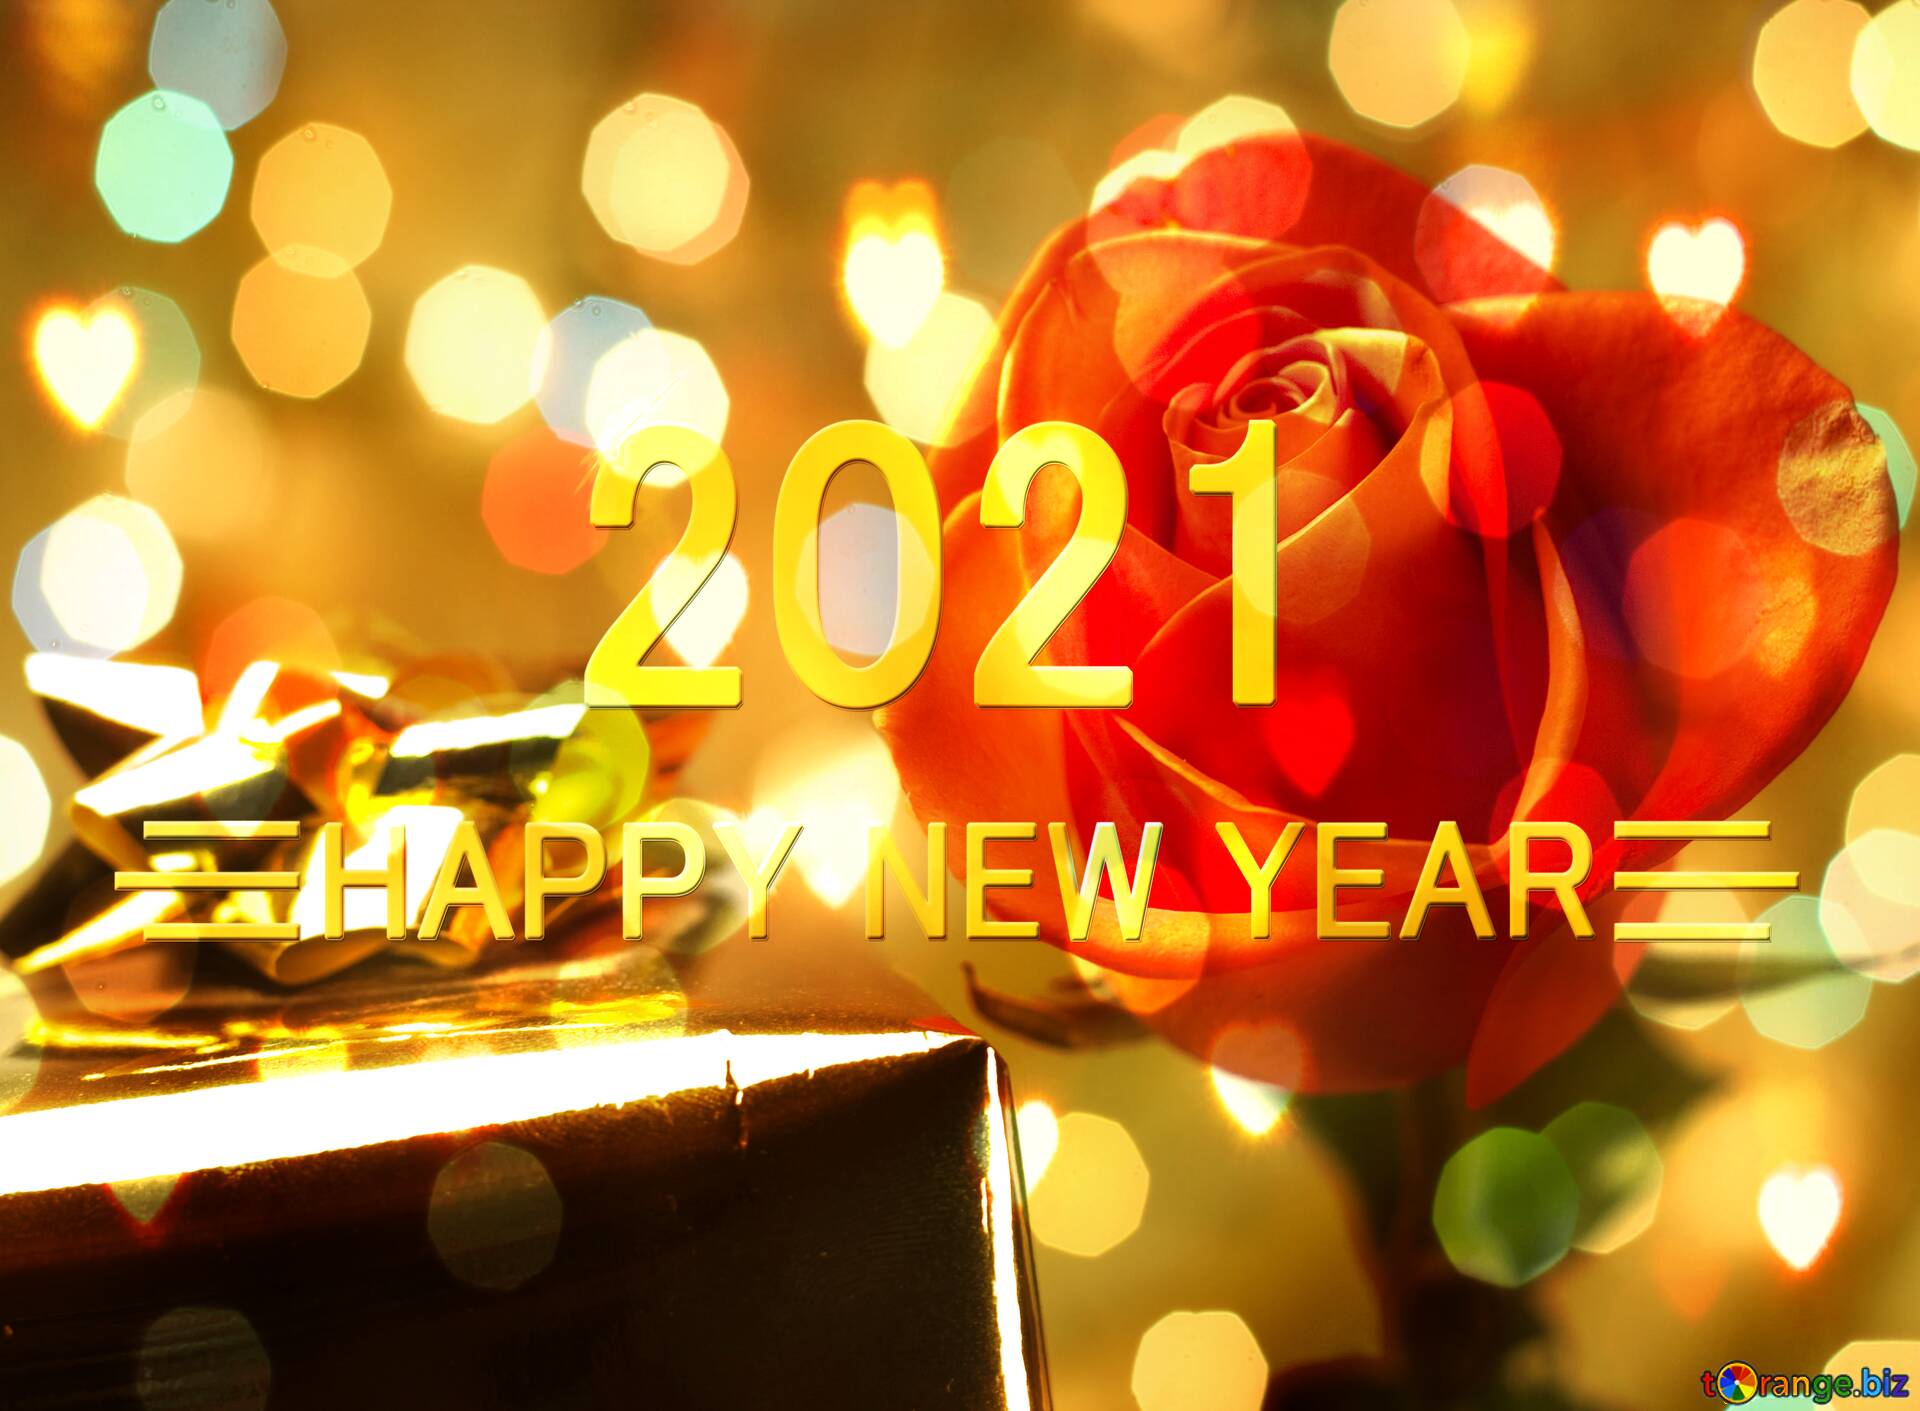 免费图片gift woman happy new year 2021